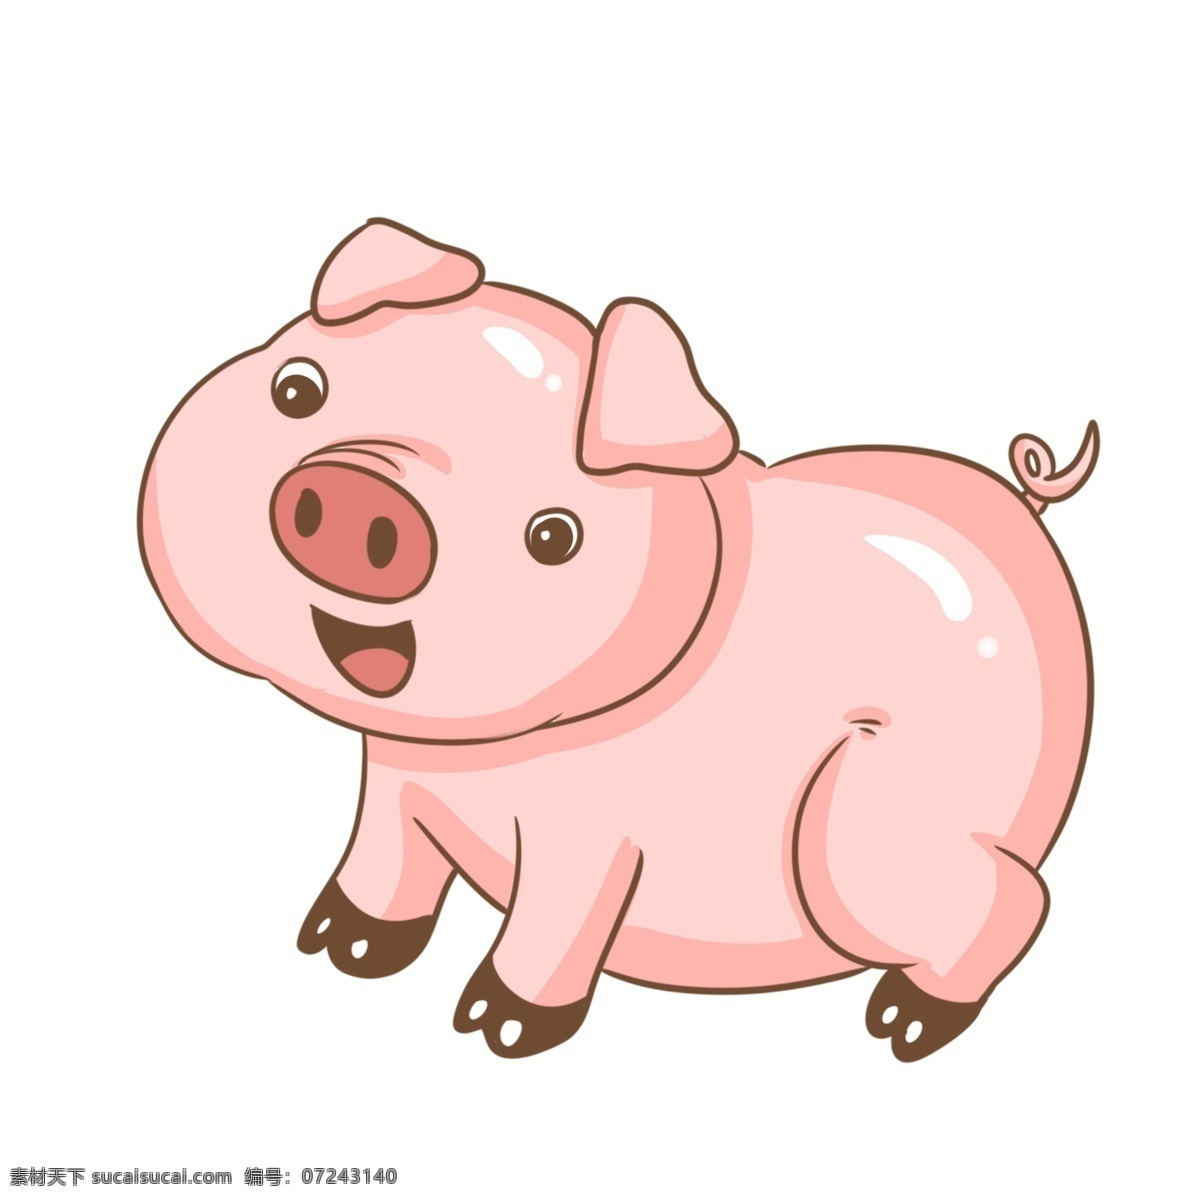 可爱 粉色 小 猪 插画 卡通猪 家养猪 家禽 动物 十二生肖 粉色的小猪 手绘小猪 萌萌哒小猪